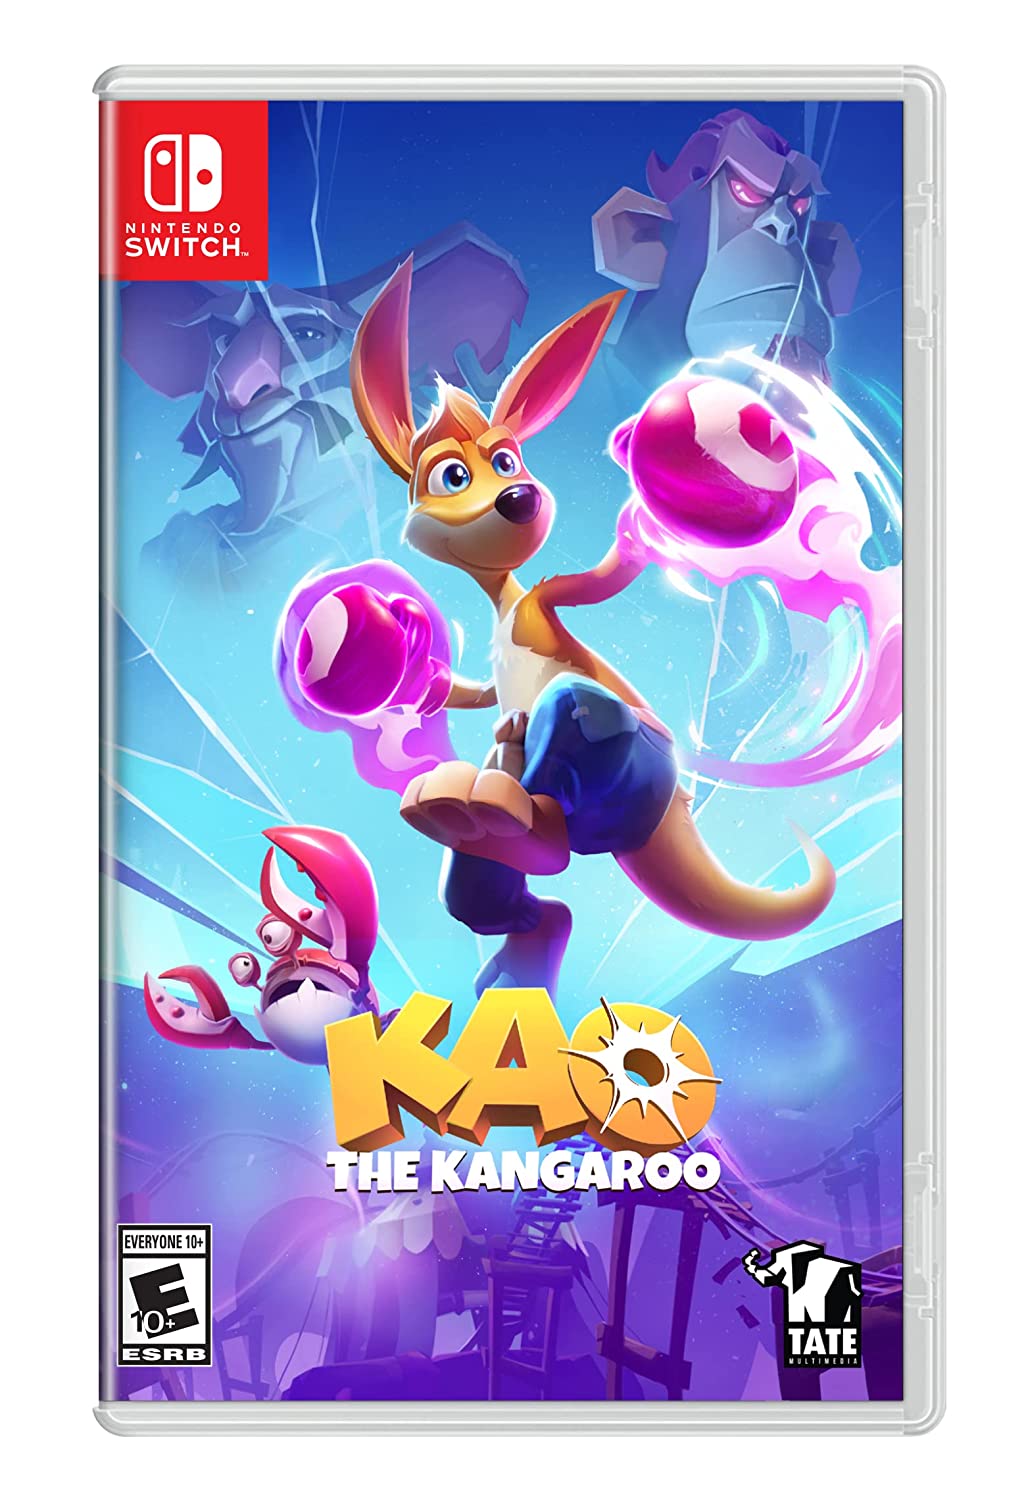 Kao The Kangaroo (Switch)